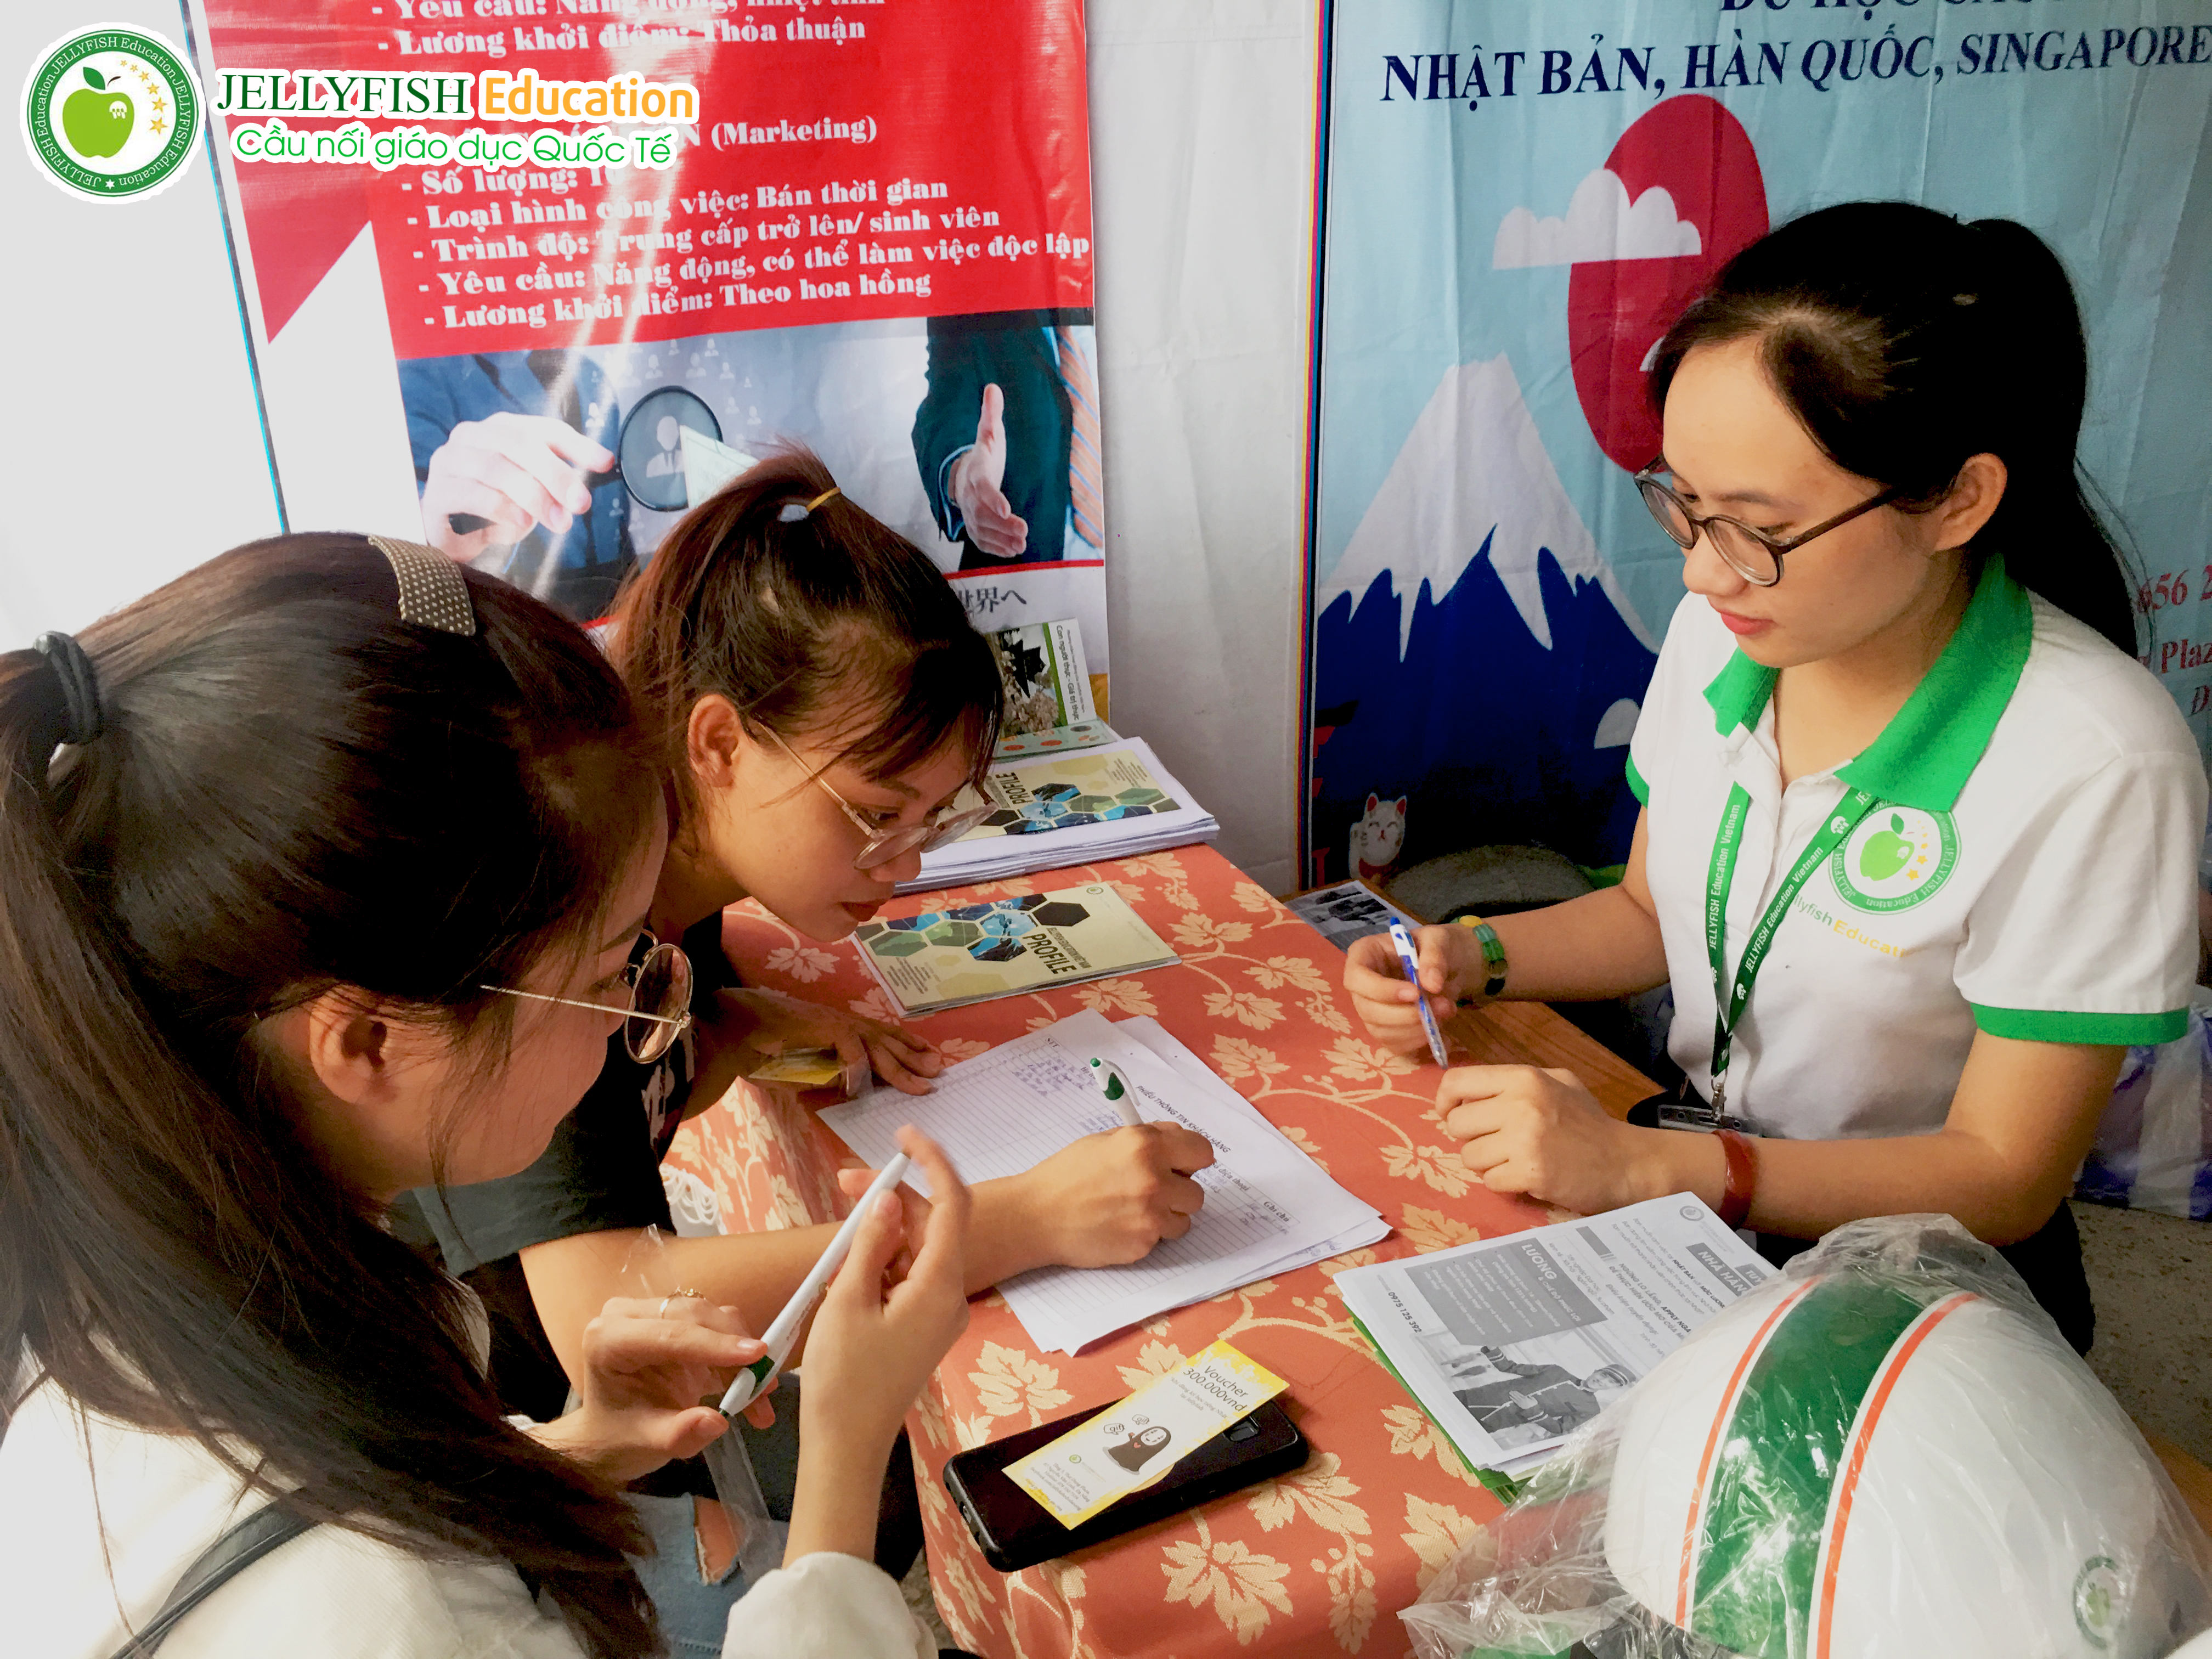 Các bạn sinh viên Trường Đại học Kinh Tế Đà Nẵng nhận được sự tư vấn tận tình, chuyên nghiệp từ chuyên viên.